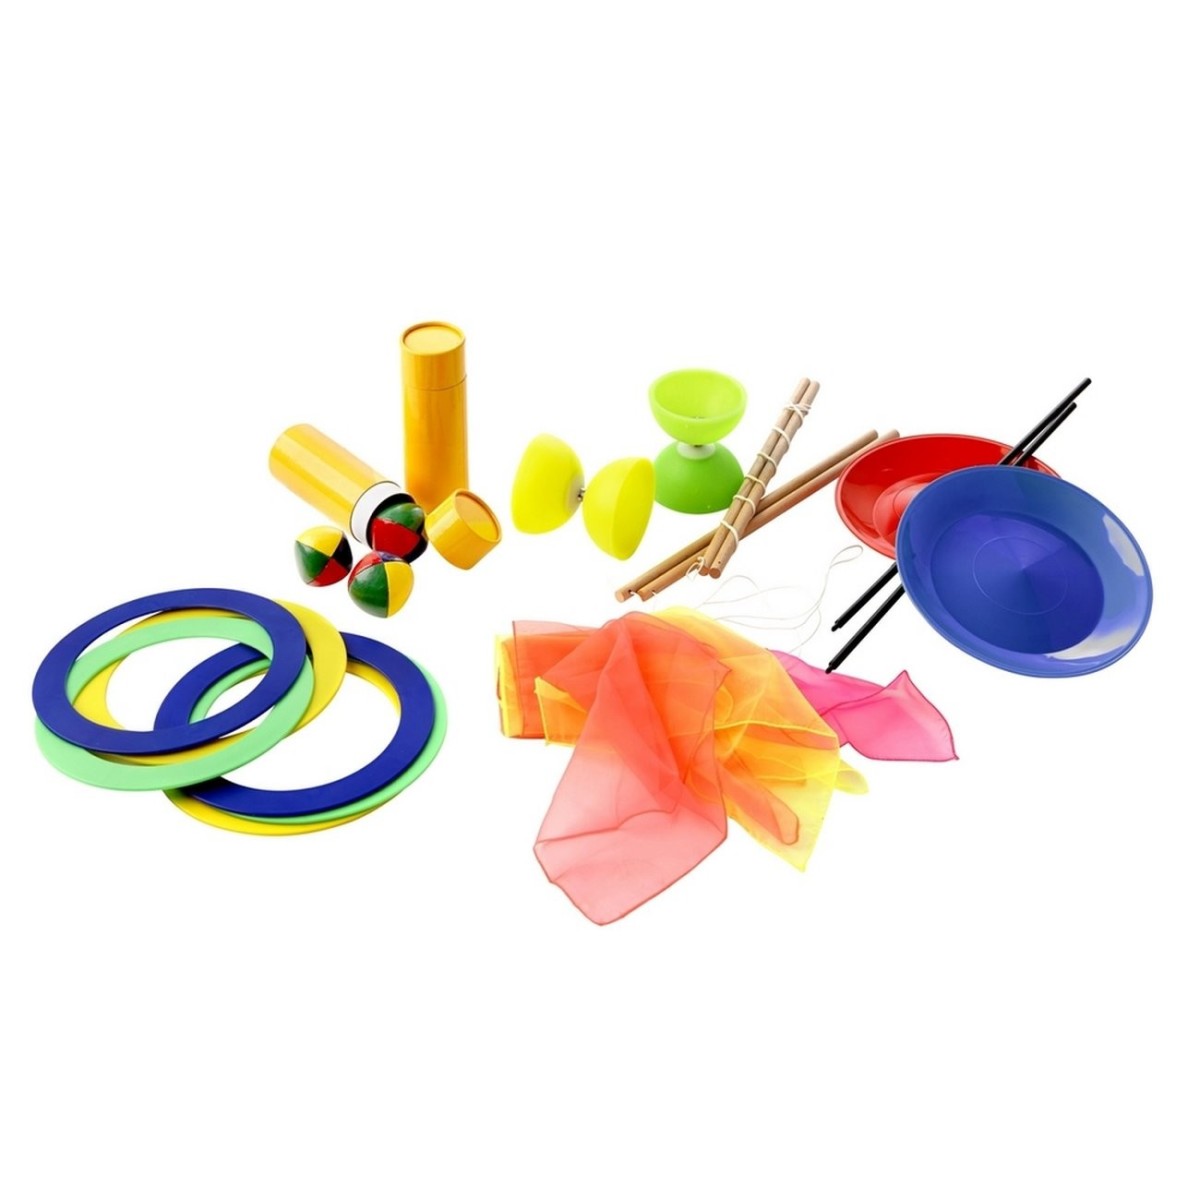 Kit de jonglerie scolaire pour 10 élèves avec anneaux, massues, balles de jonglage à acheter pas cher